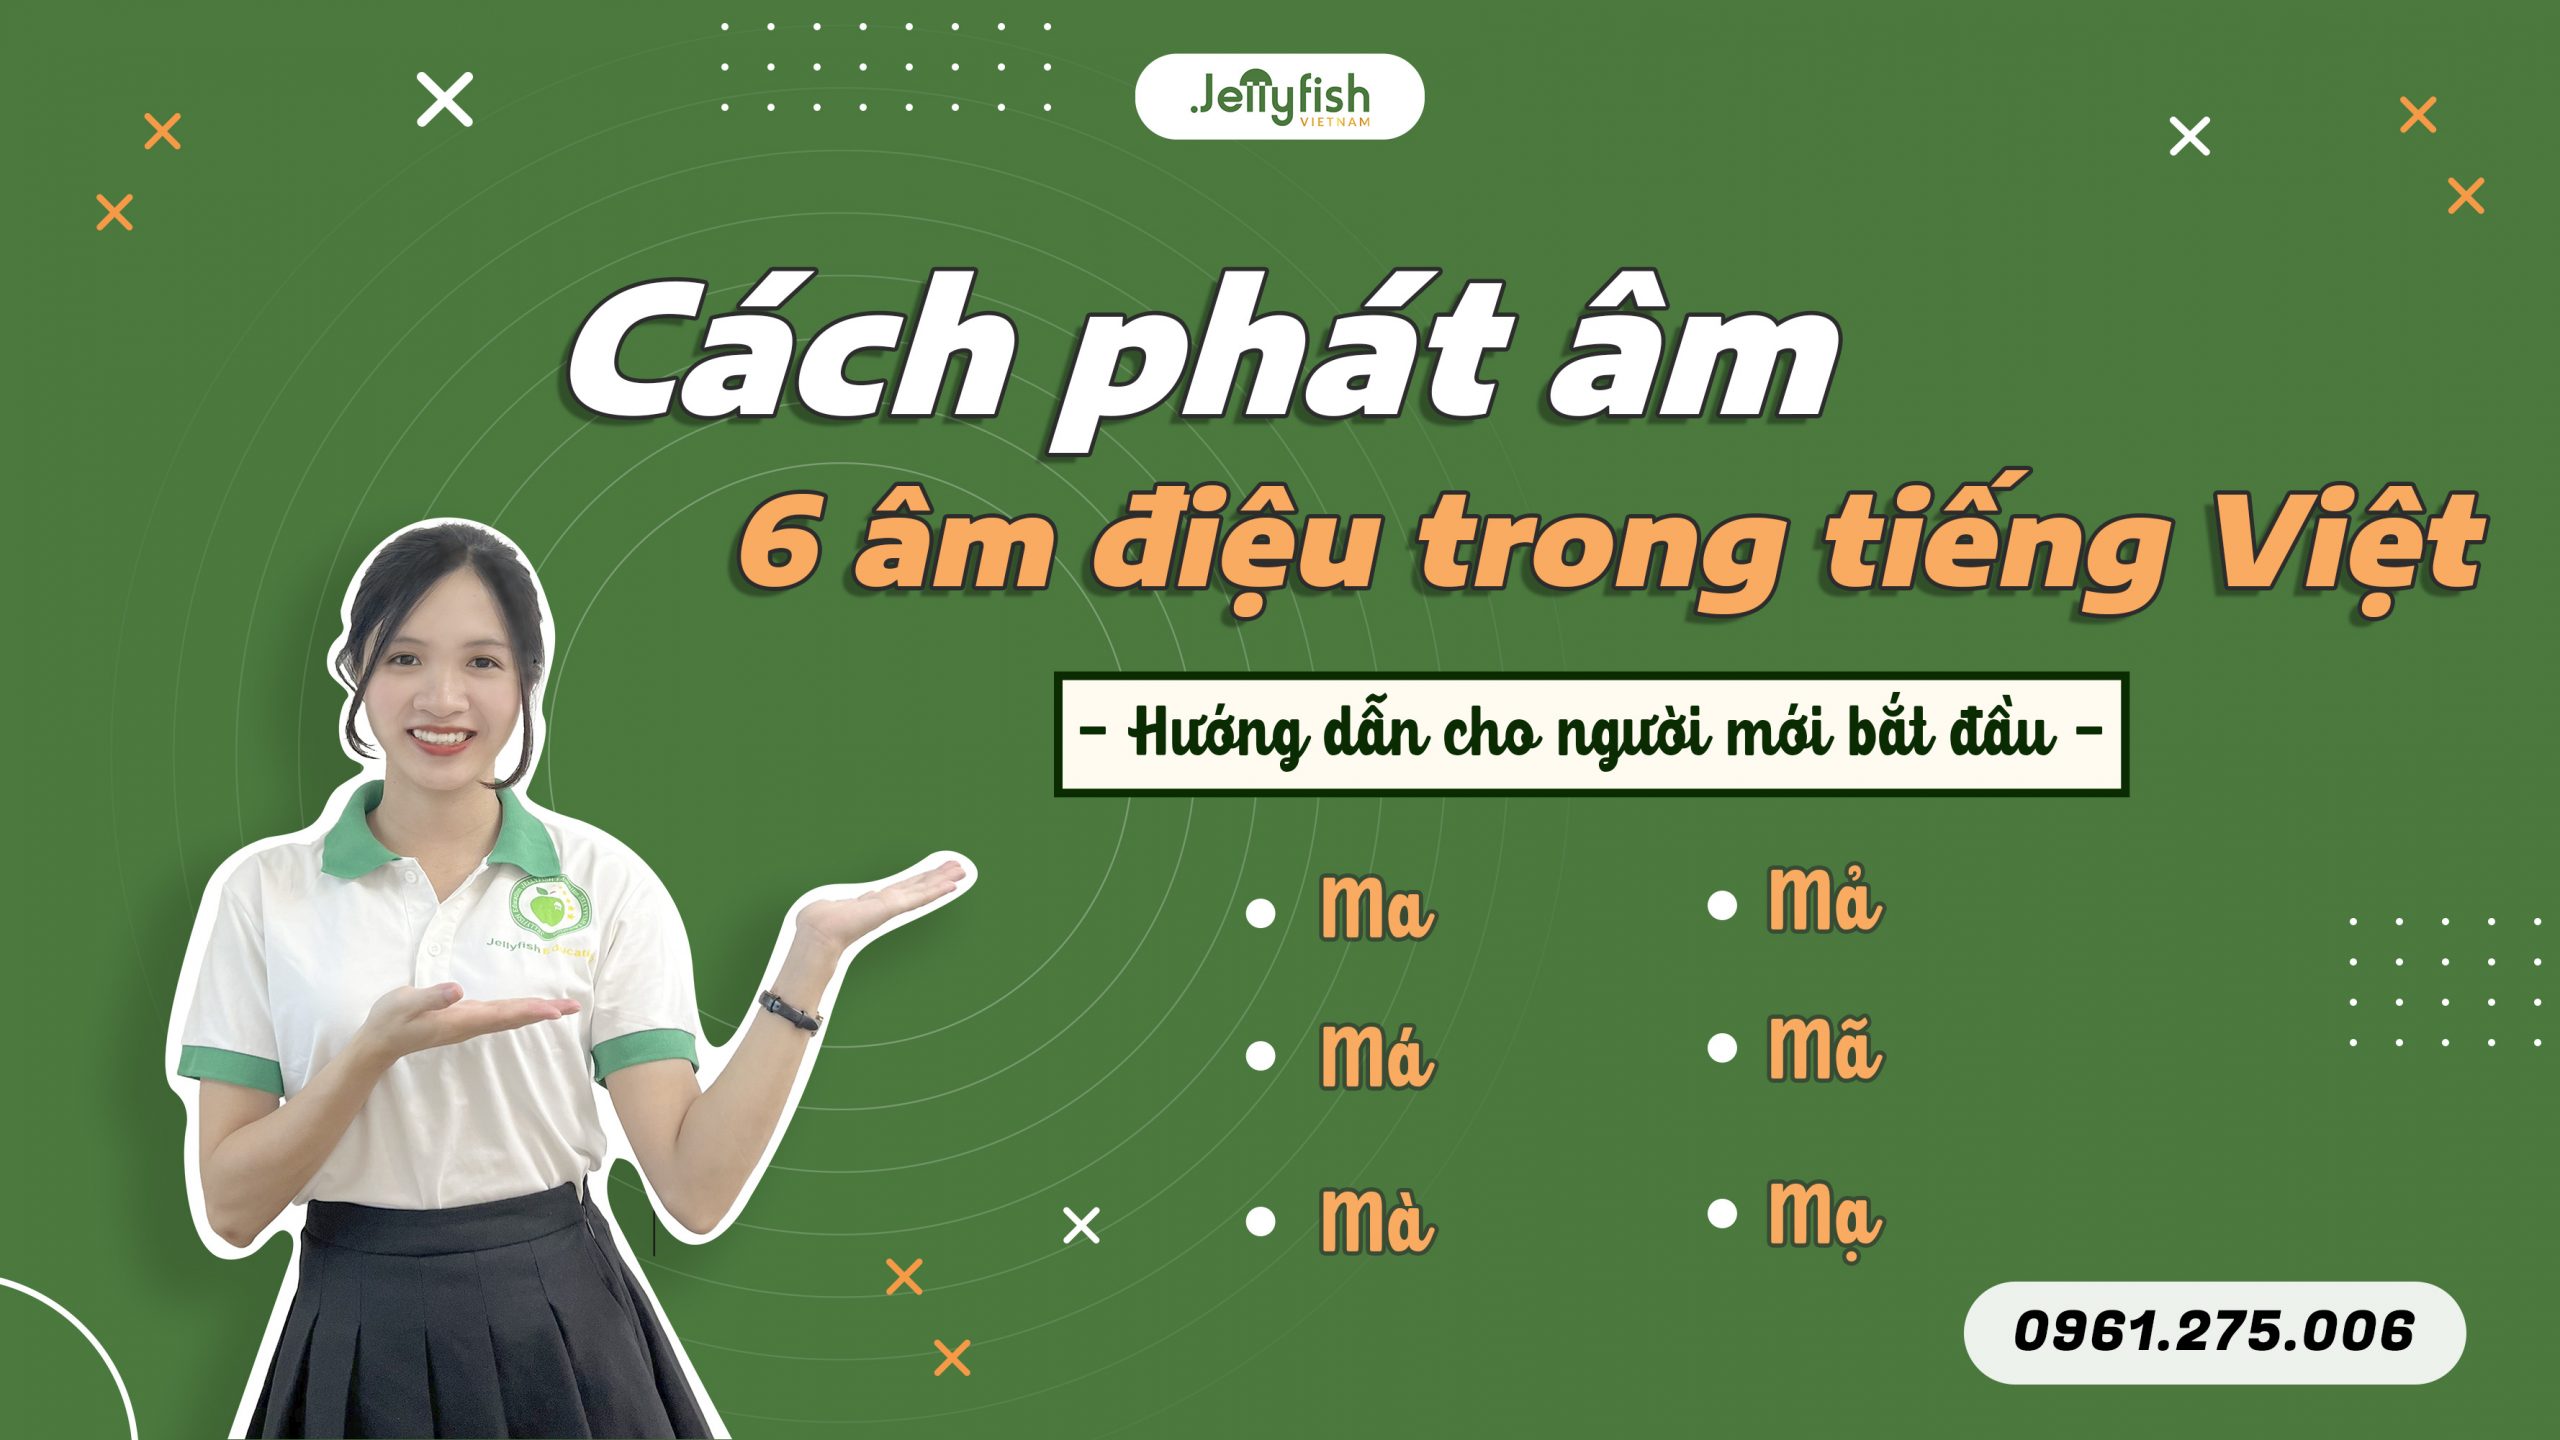 6 Thanh điệu trong tiếng Việt: Hướng dẫn phát âm cho người nước